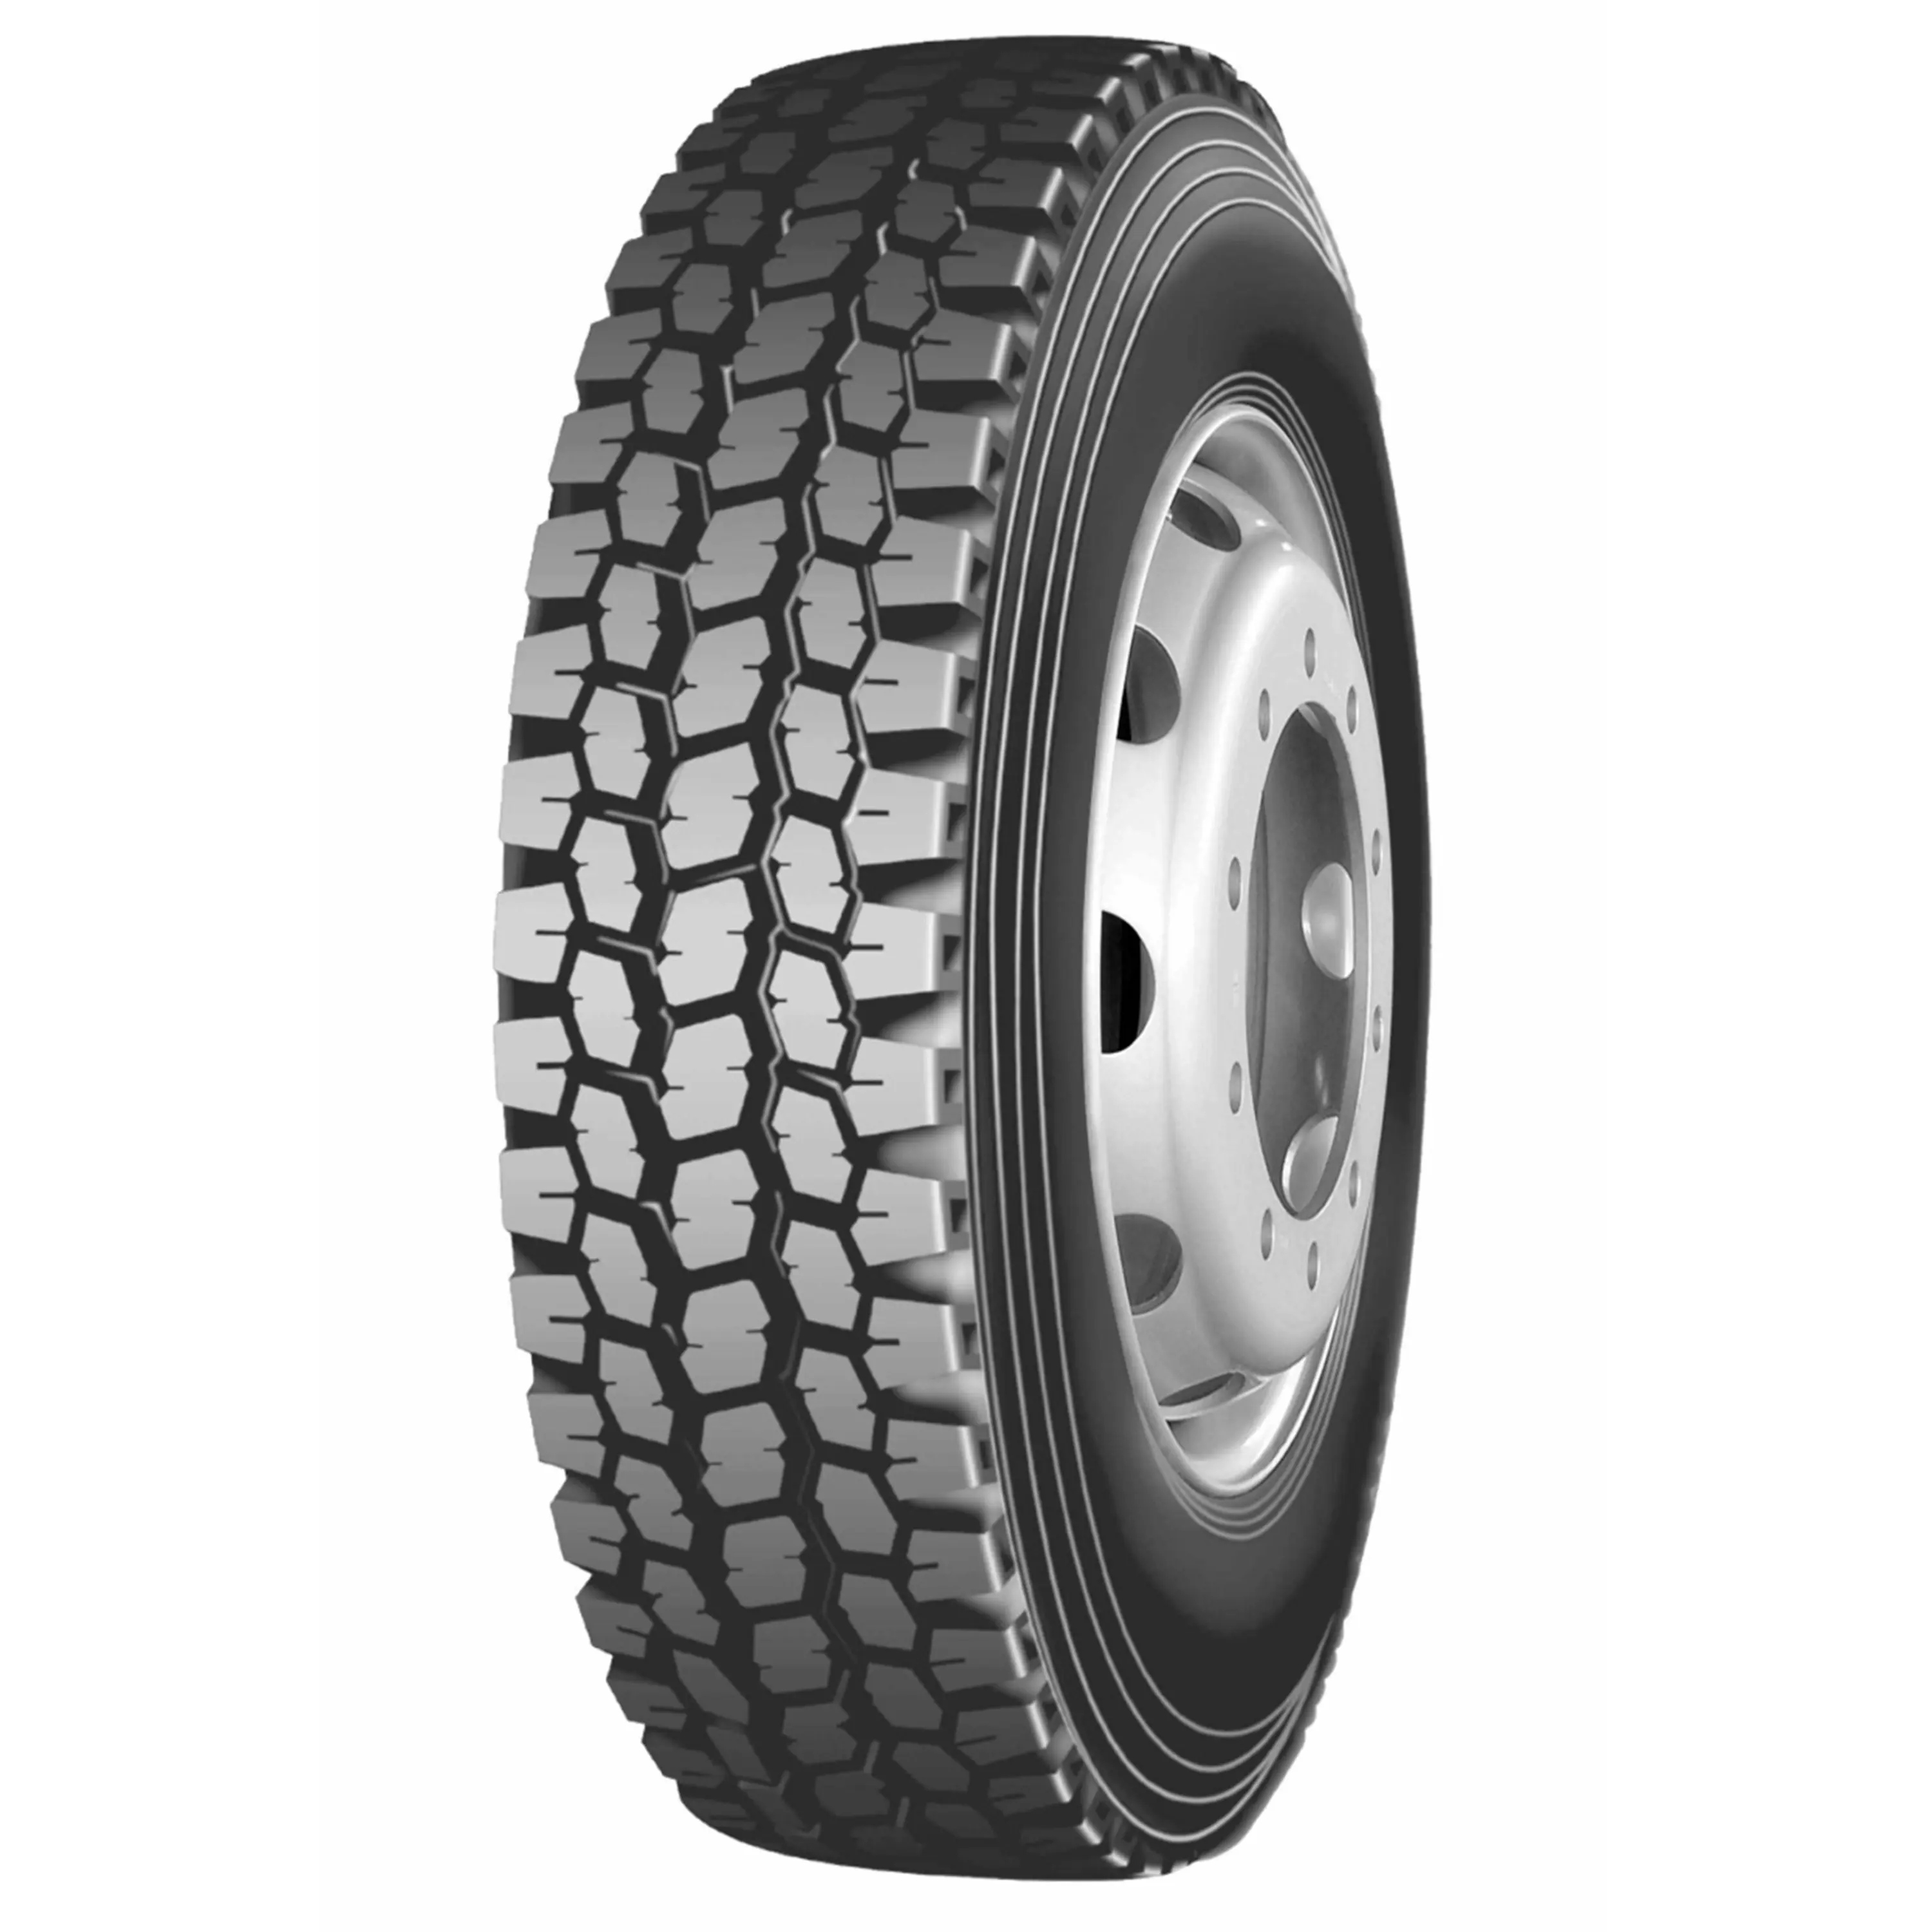 최고의 등급 원래 중고차 타이어-새로운 타이어-판매를위한 새로운 중고차 트럭 타이어